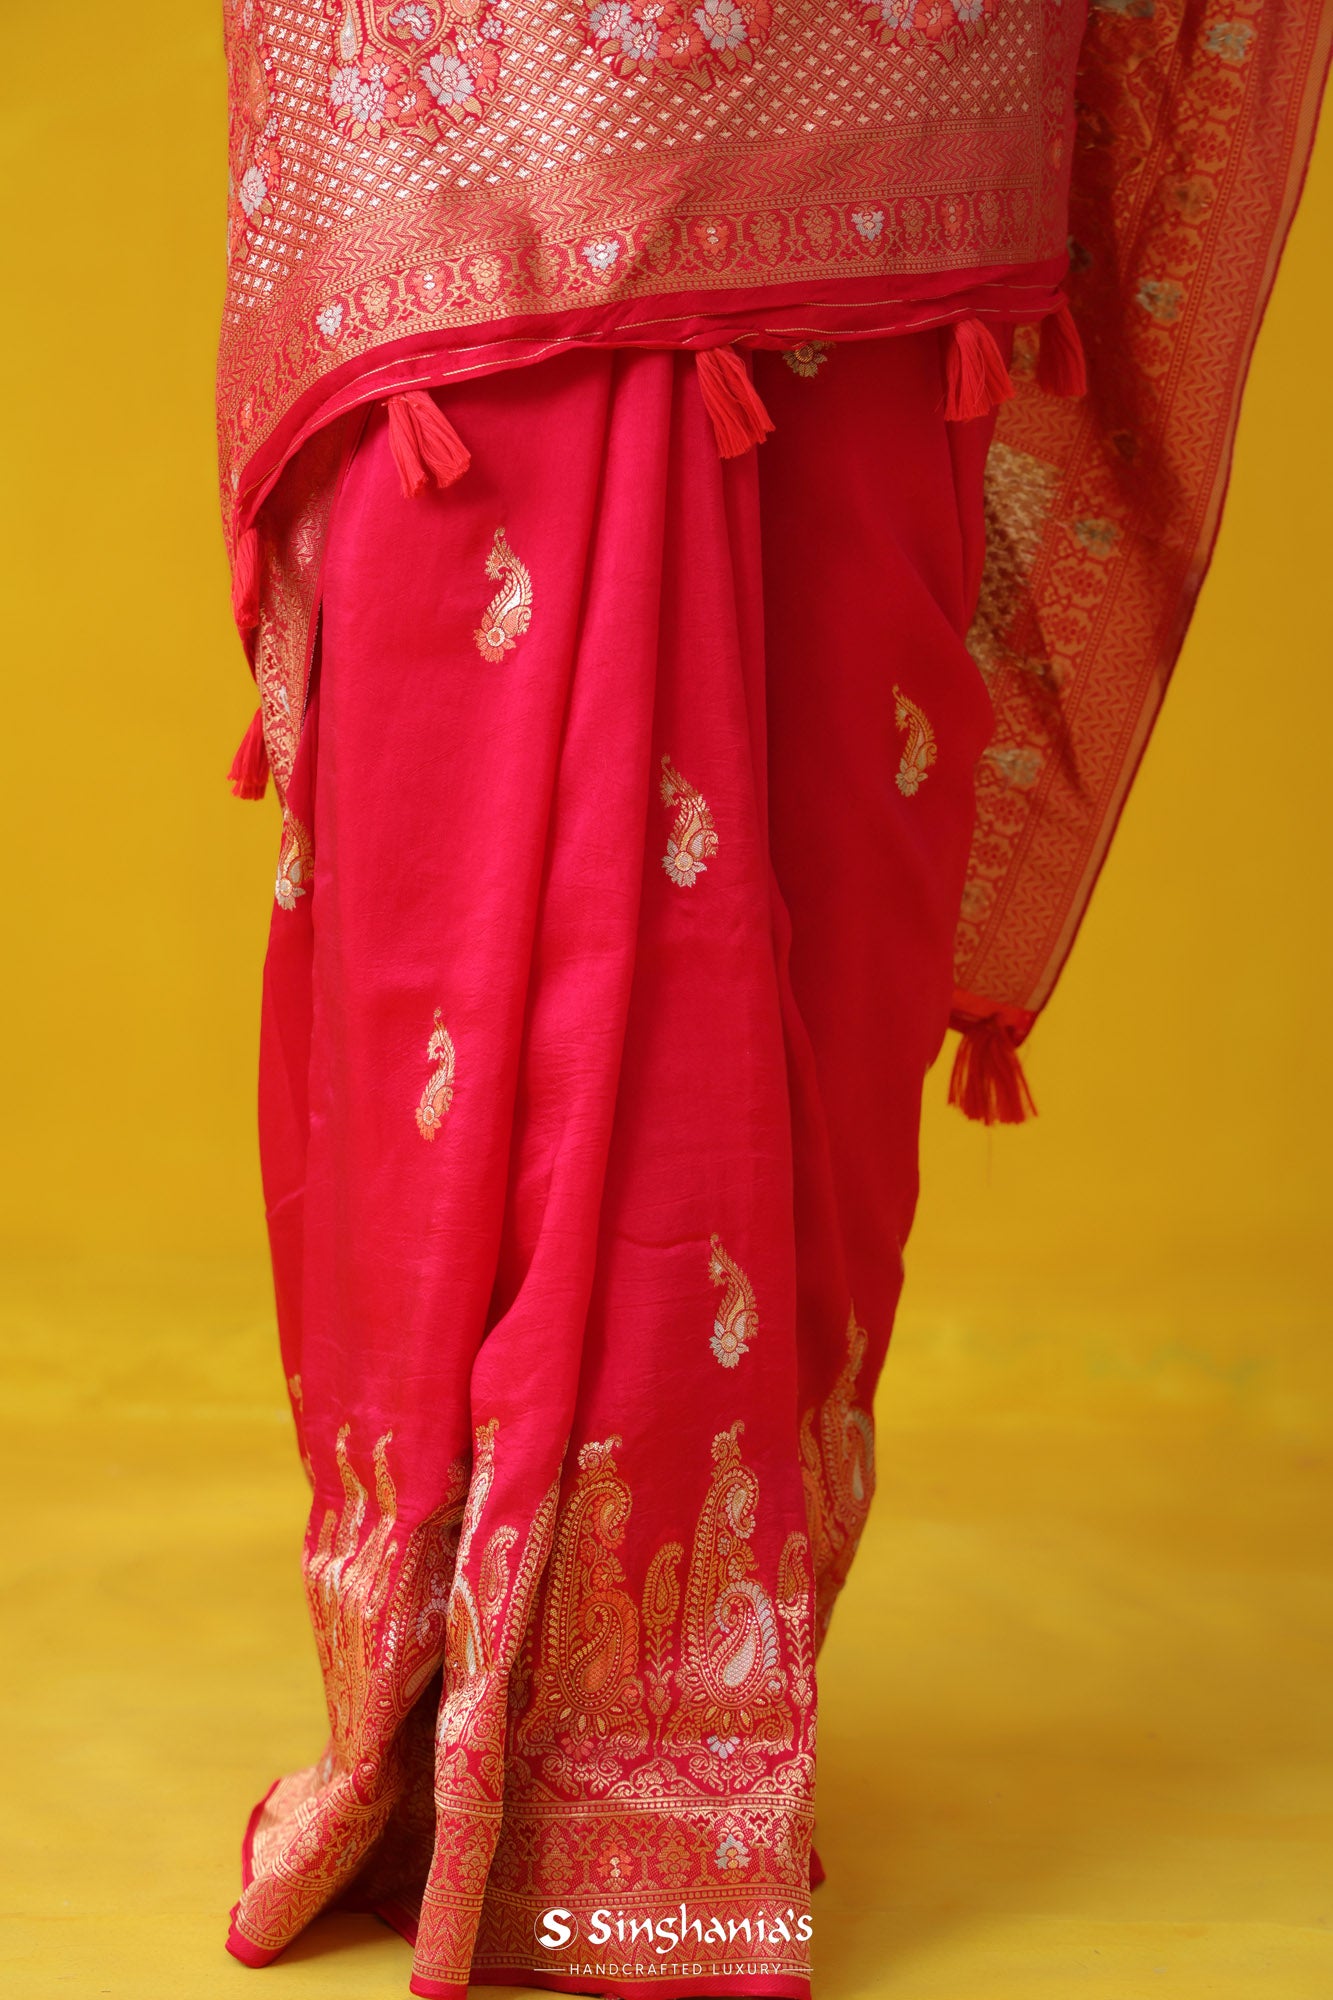 Raspberry Red Banarasi Satin Saree With Floral Paisley Motif